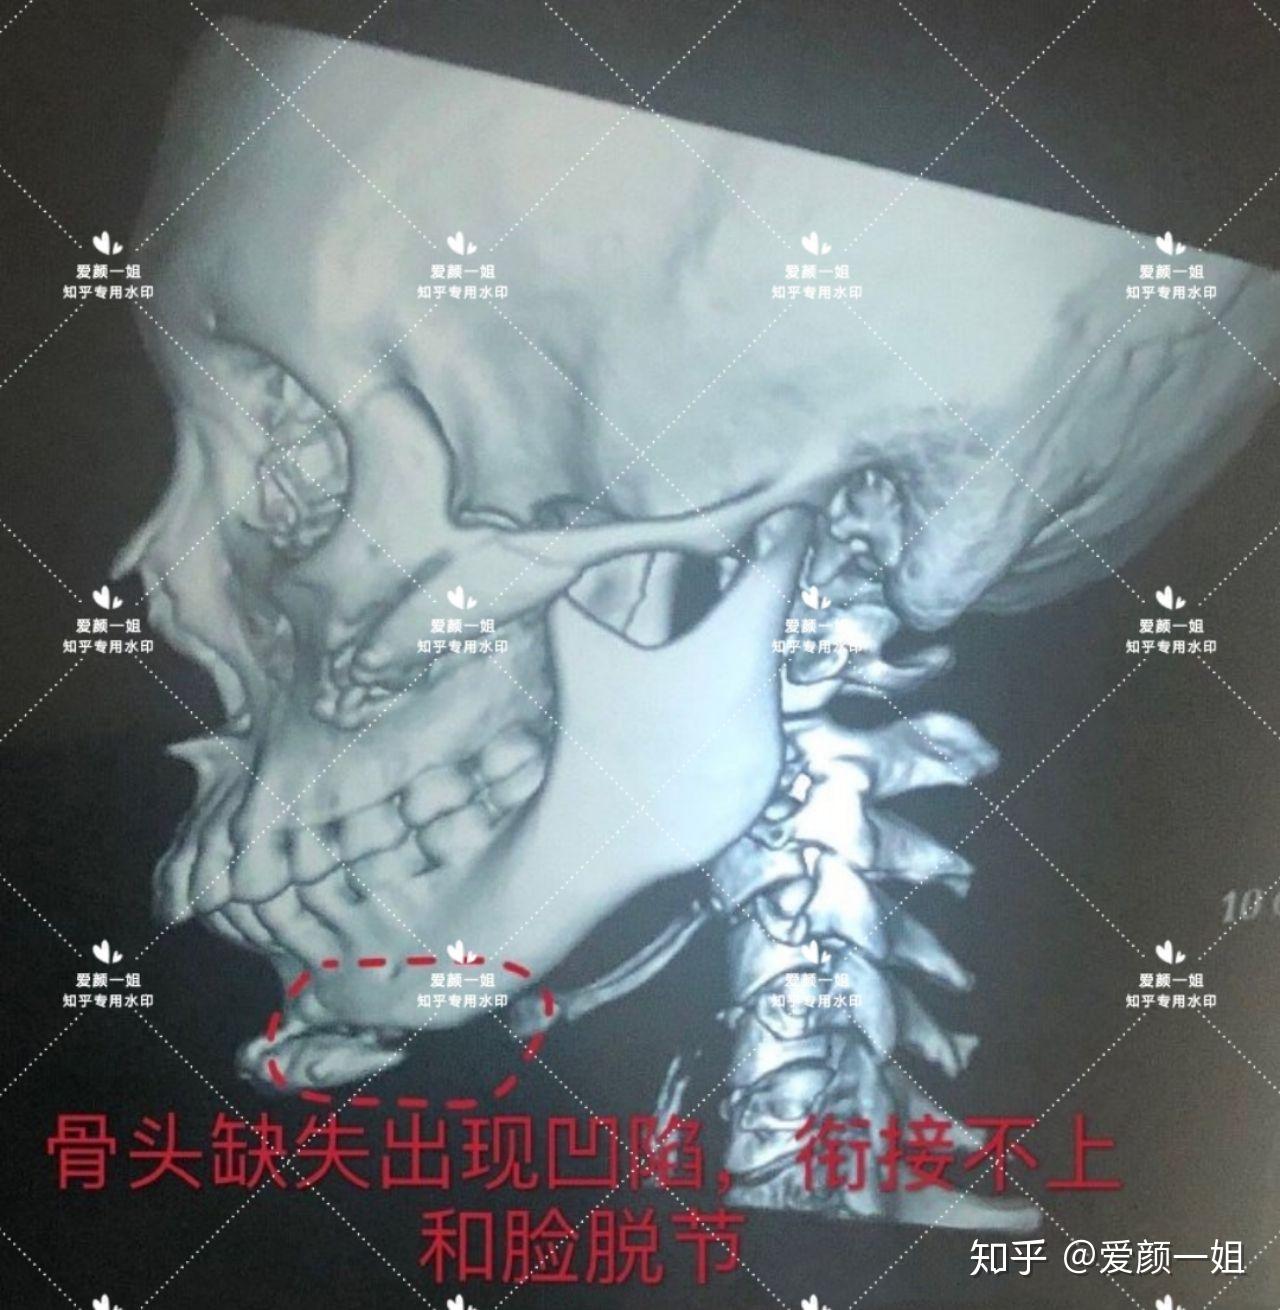 看妹子术后ct,颧骨颧弓内推手术无效果,变化不大,出现明显大小脸;下颌